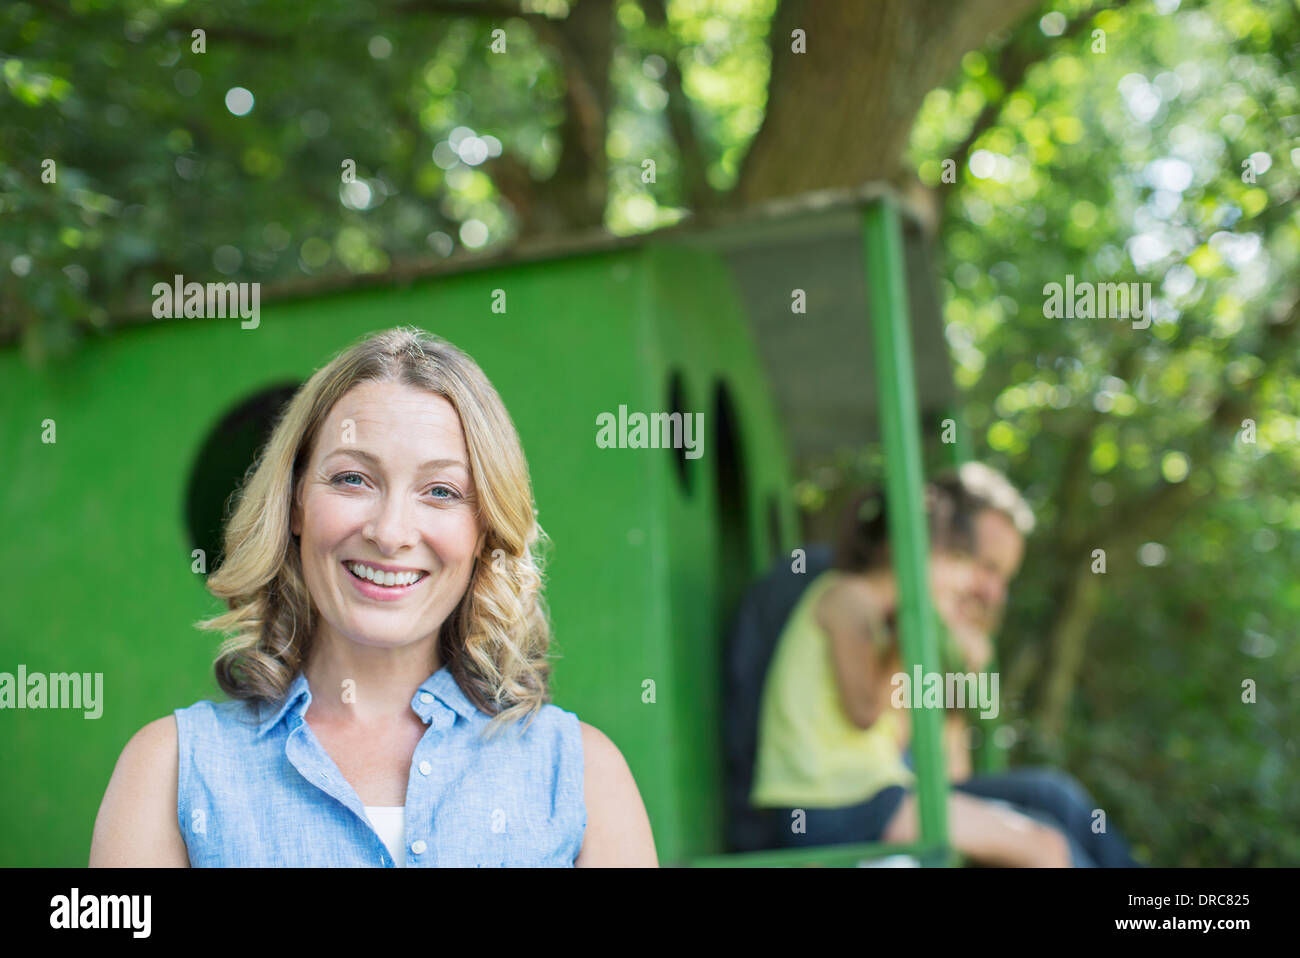 Woman smiling with treehouse en arrière-plan Banque D'Images